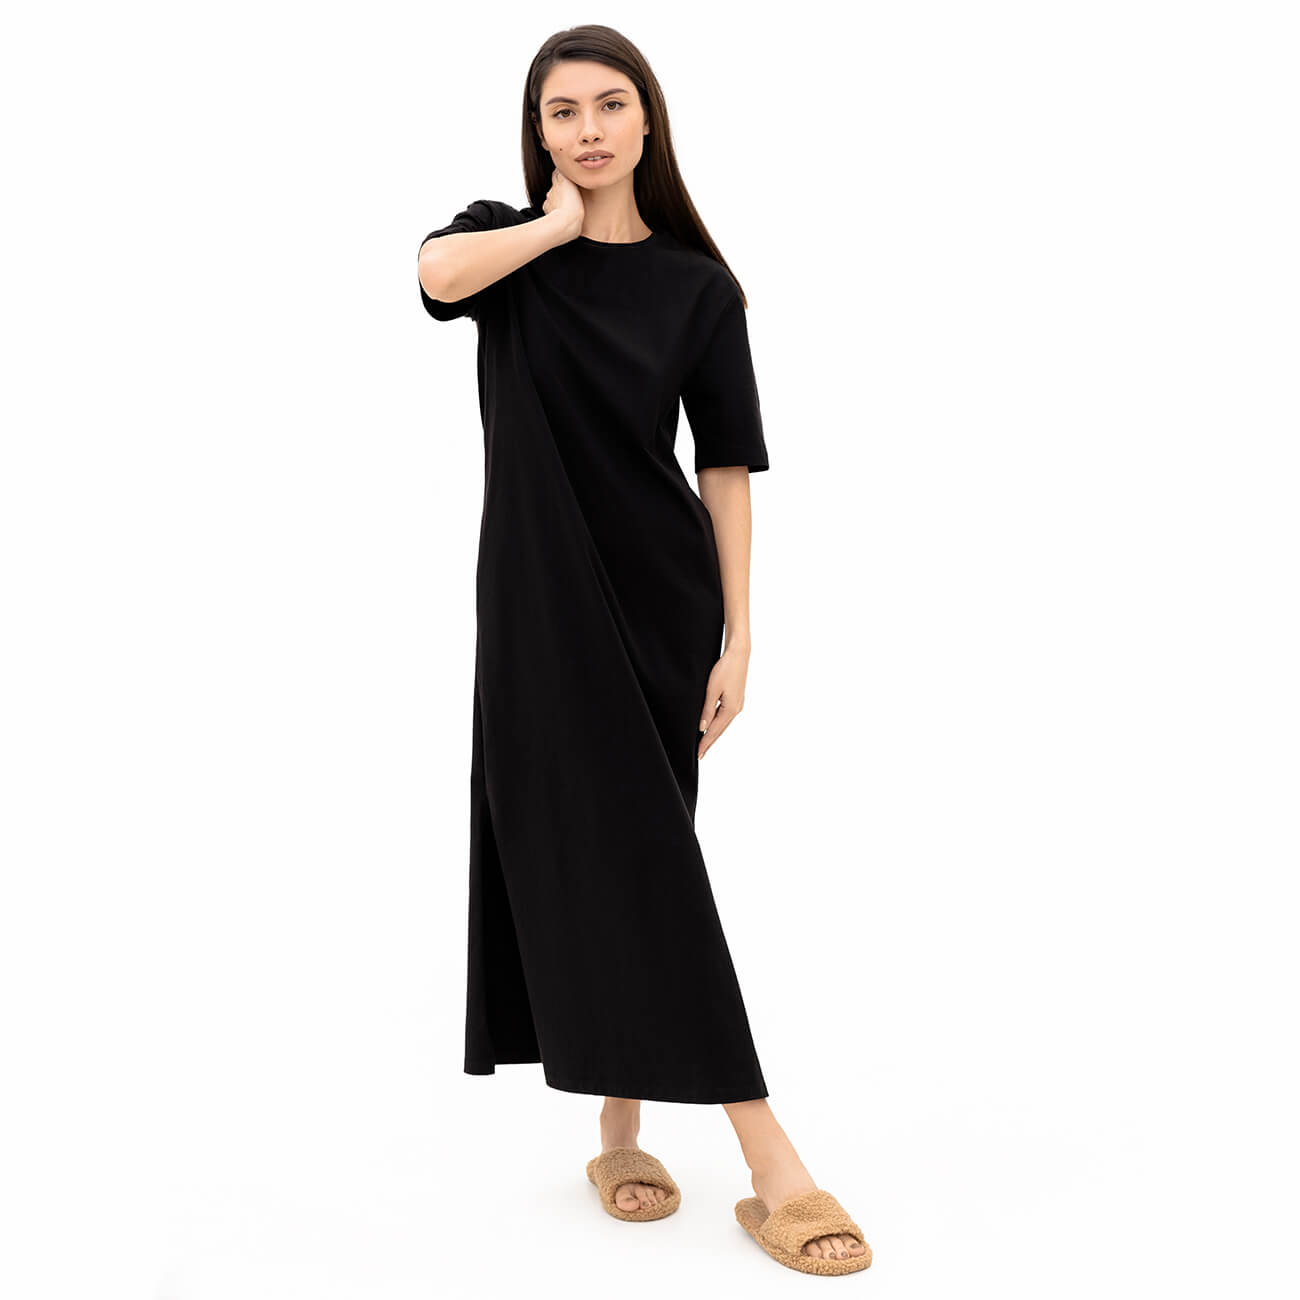 Платье-футболка женское, макси, р. S, с разрезами, хлопок, черное, Andrea - фото 1